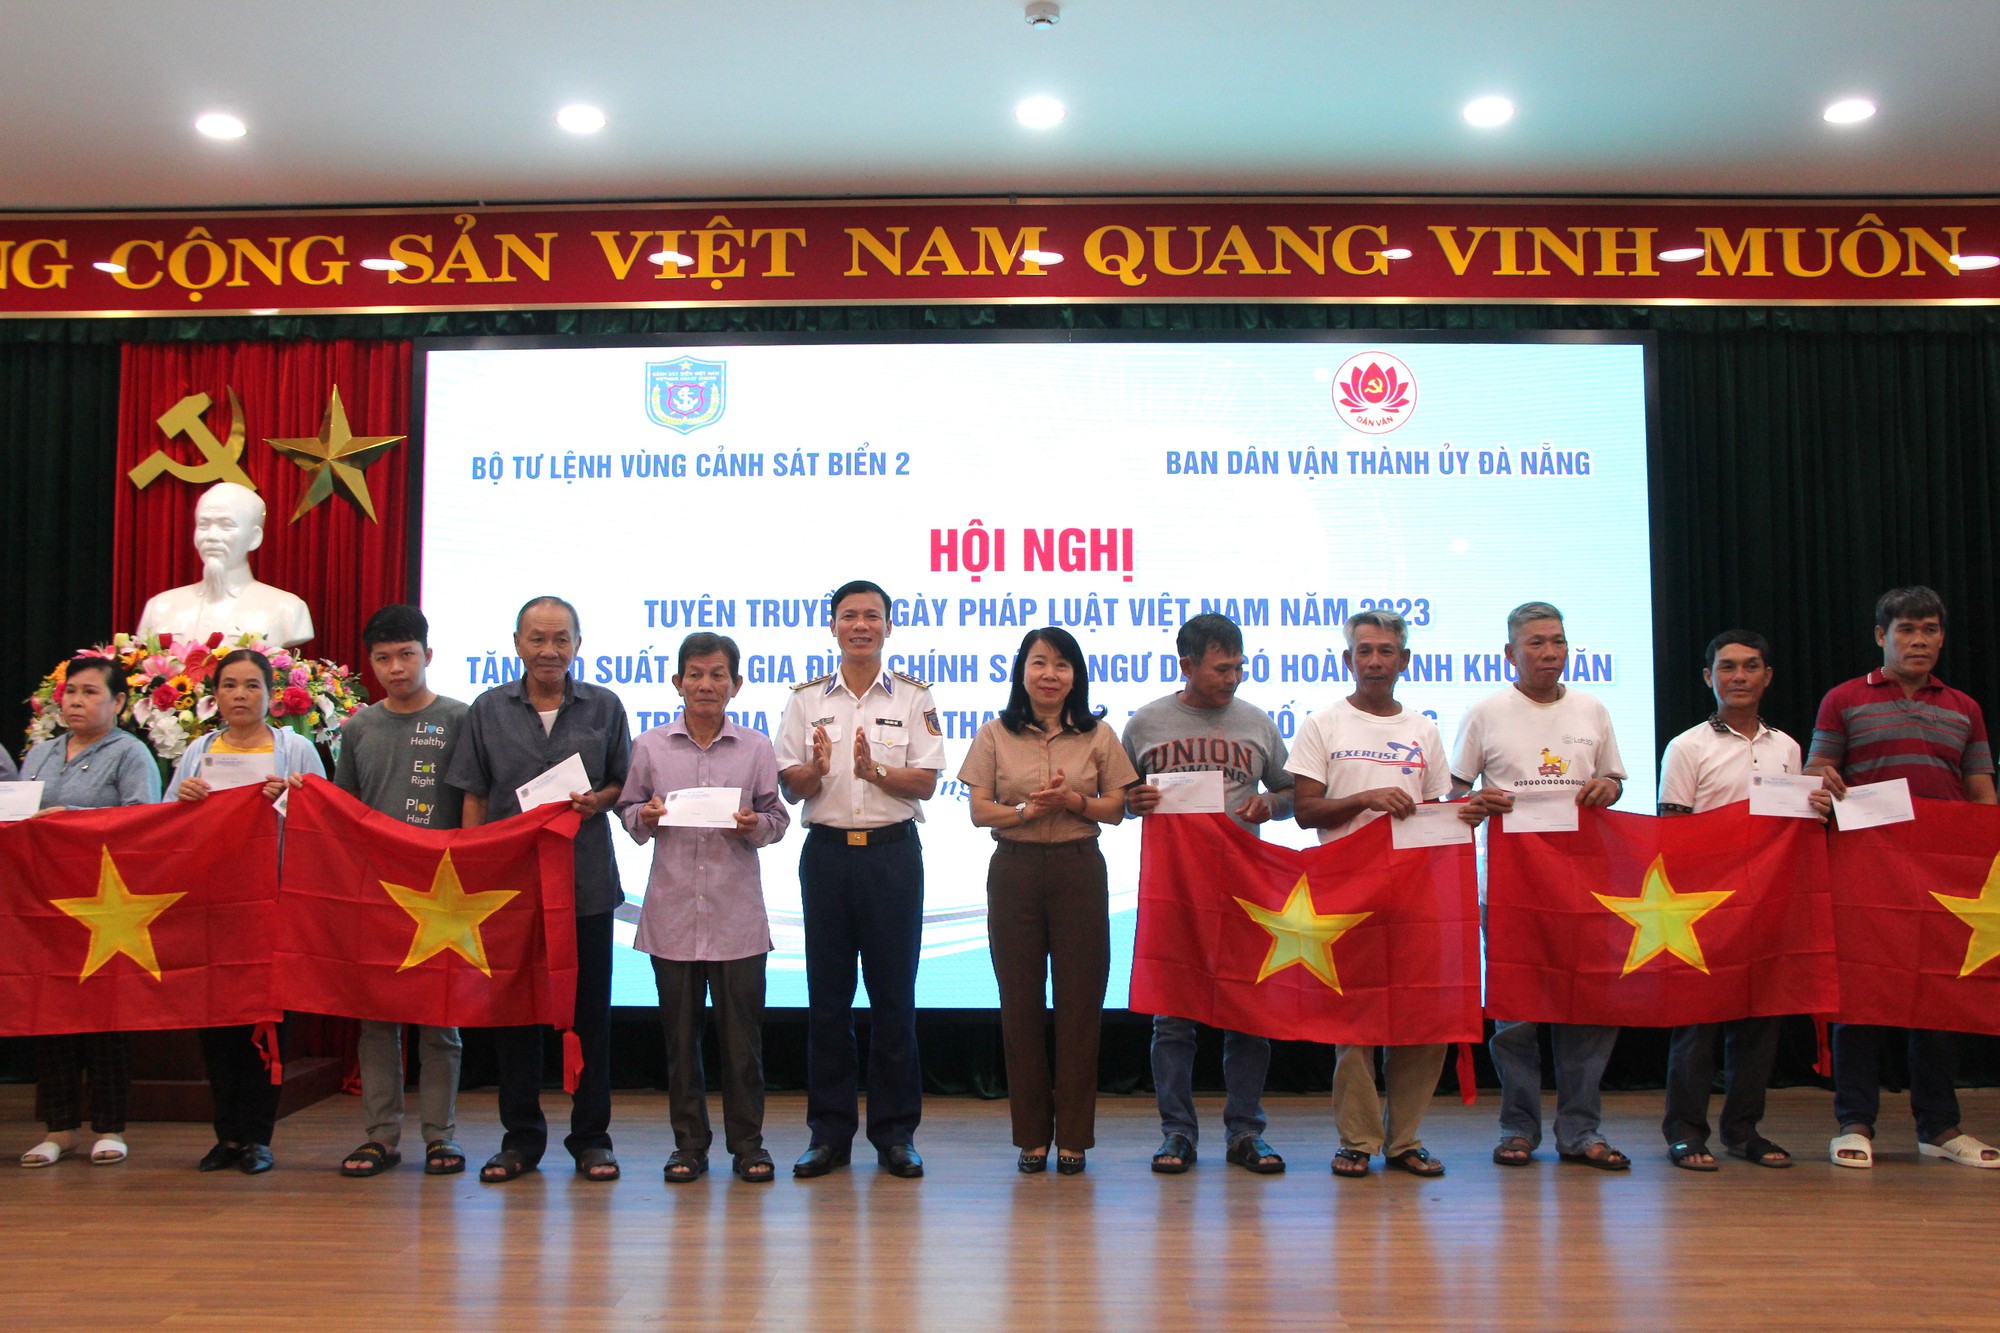 Bộ Tư lệnh Vùng Cảnh sát biển 2 đến với ngư dân Đà Nẵng - Ảnh 6.